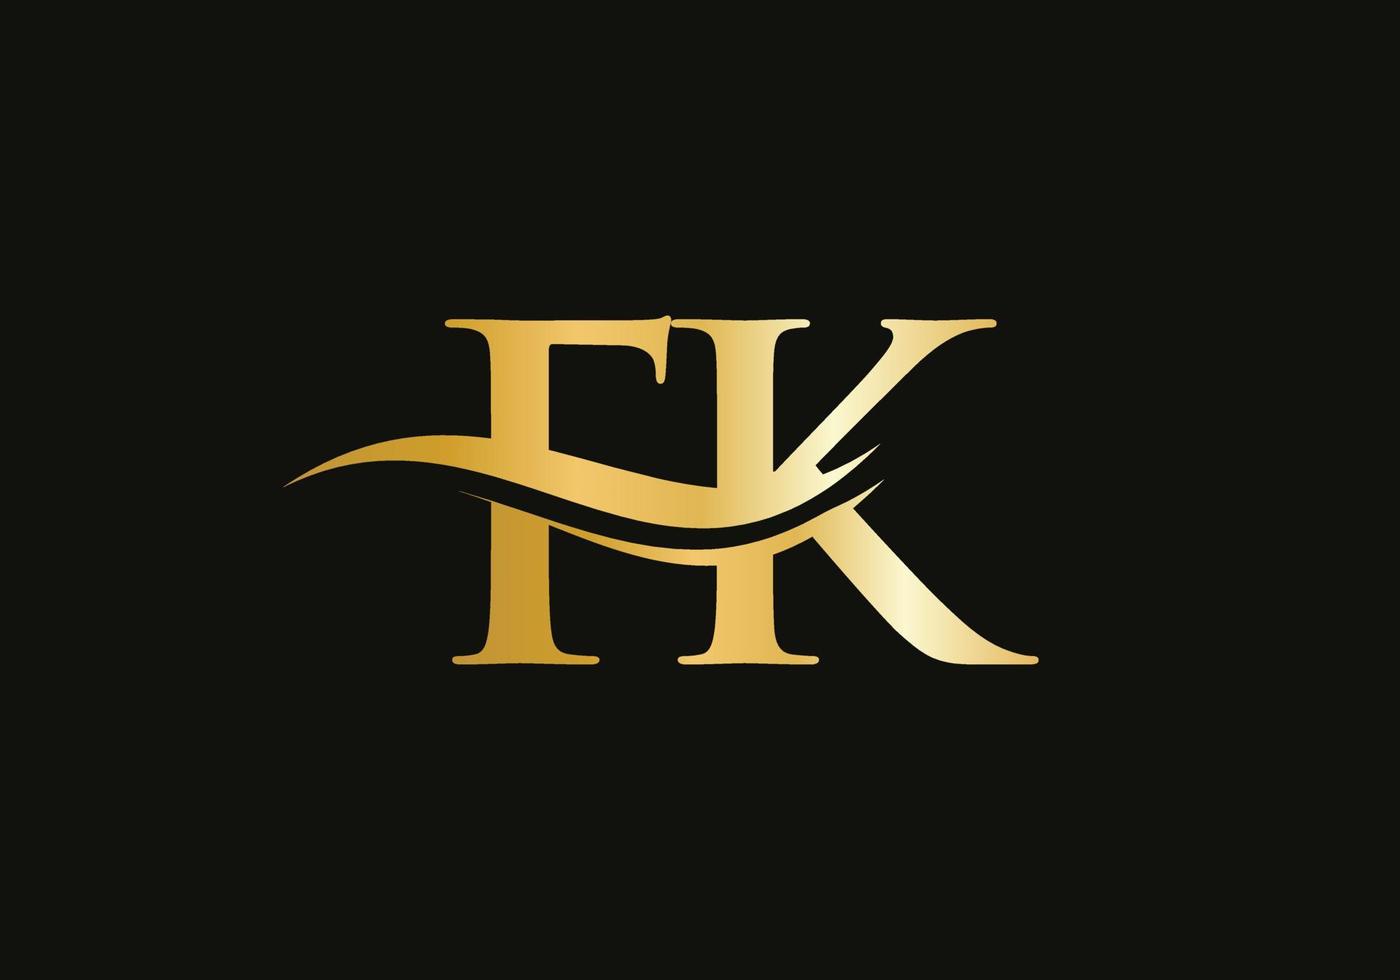 création de logo fk moderne pour l'identité de l'entreprise et de l'entreprise. lettre fk créative avec concept de luxe vecteur